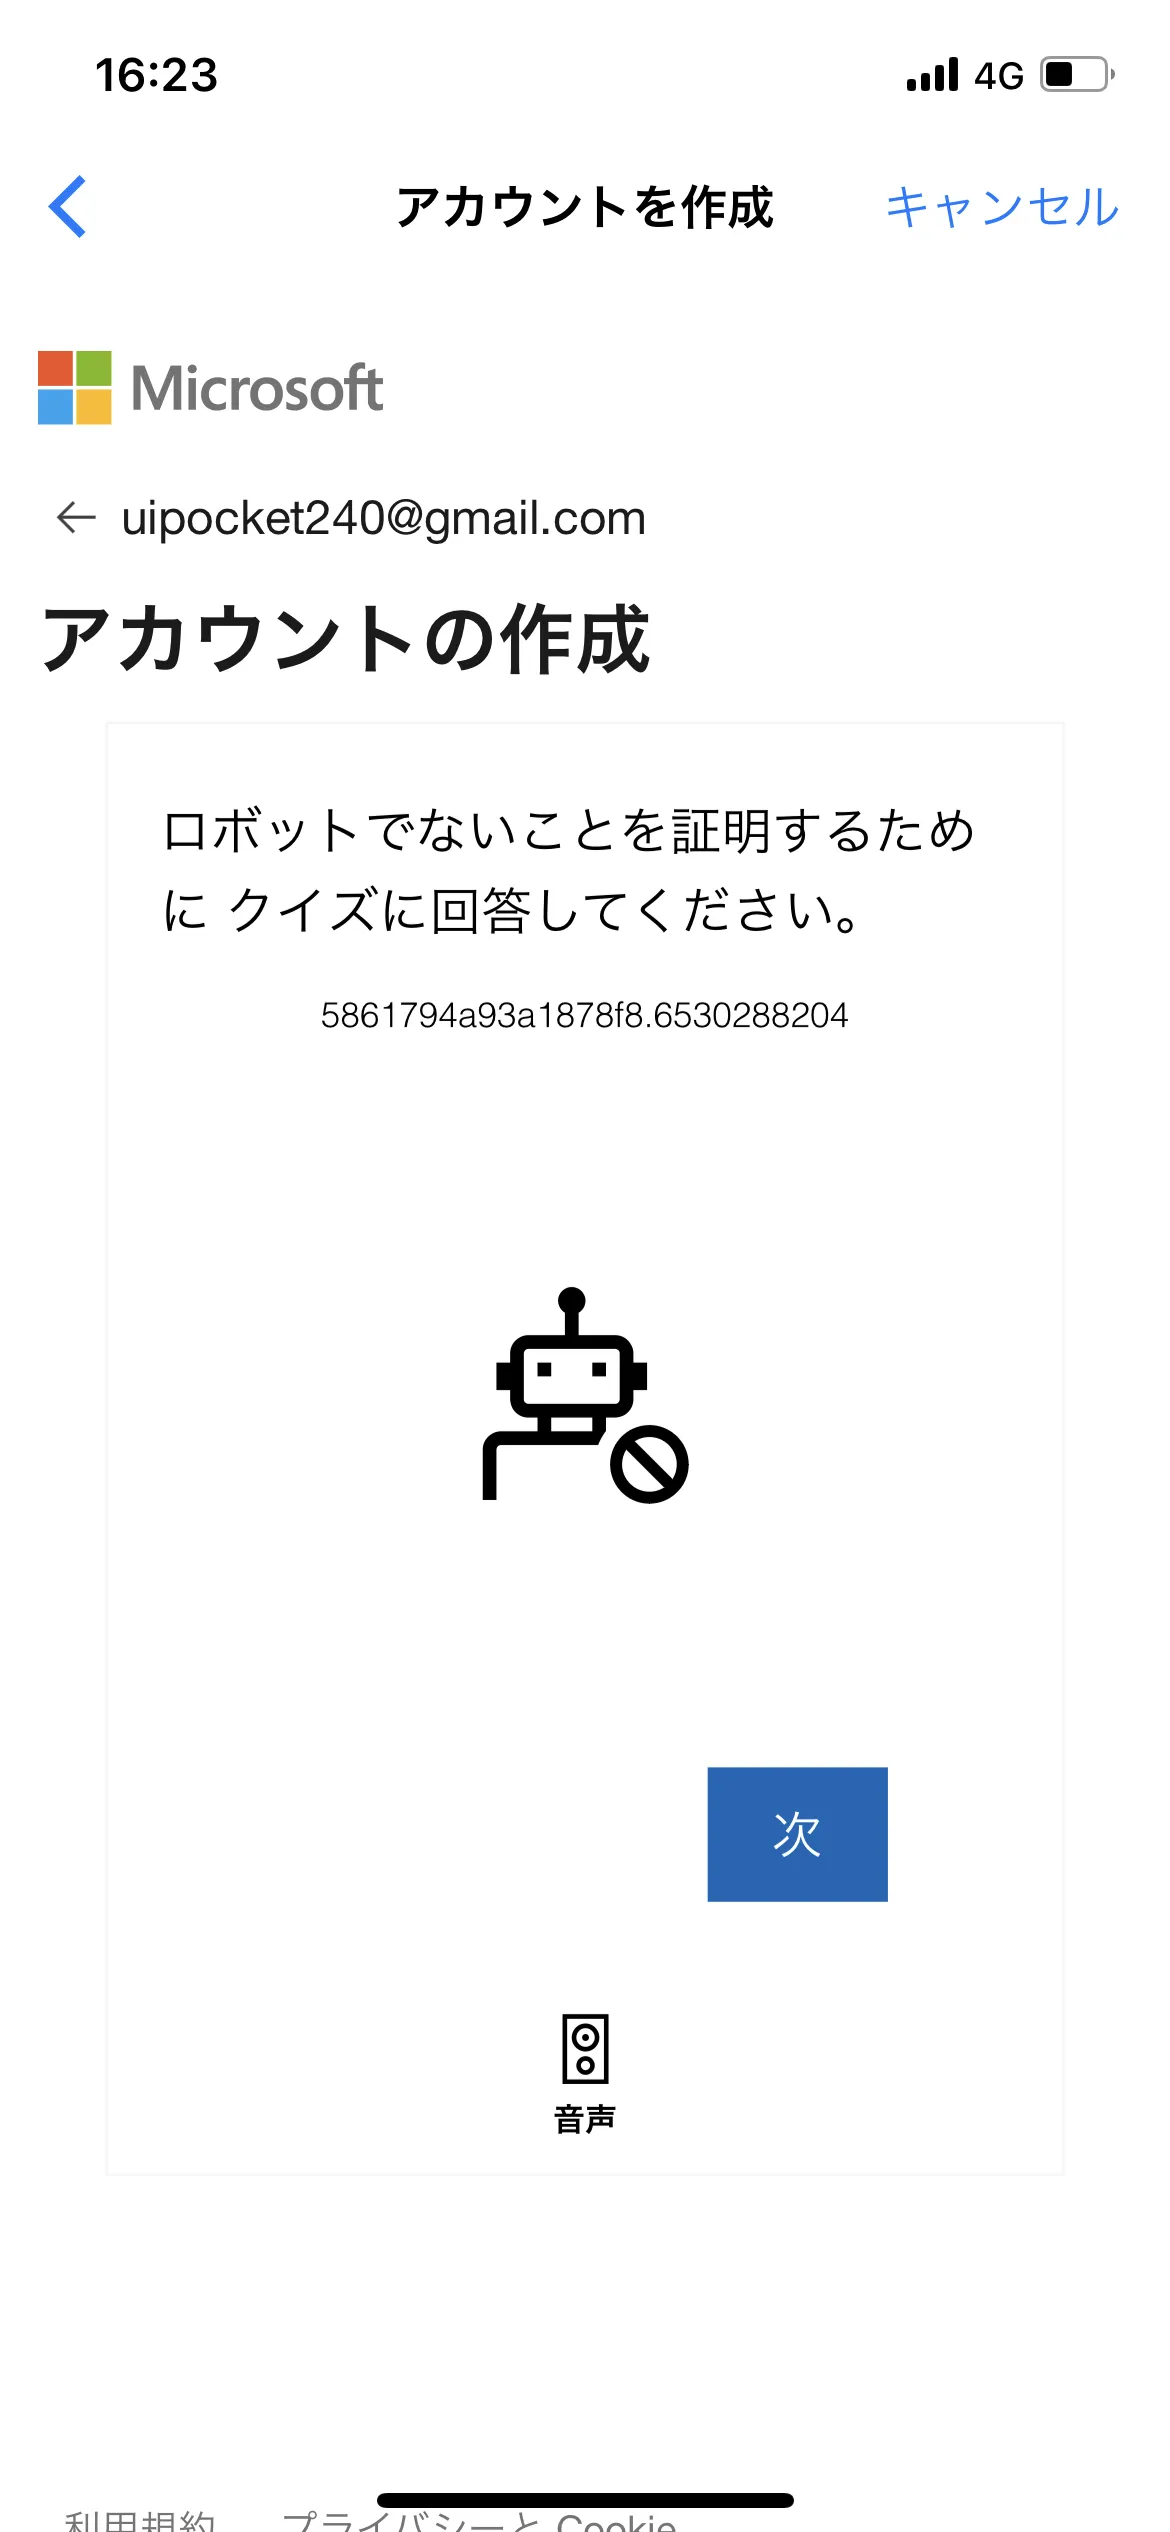 Bing アカウント作成・設定 screen